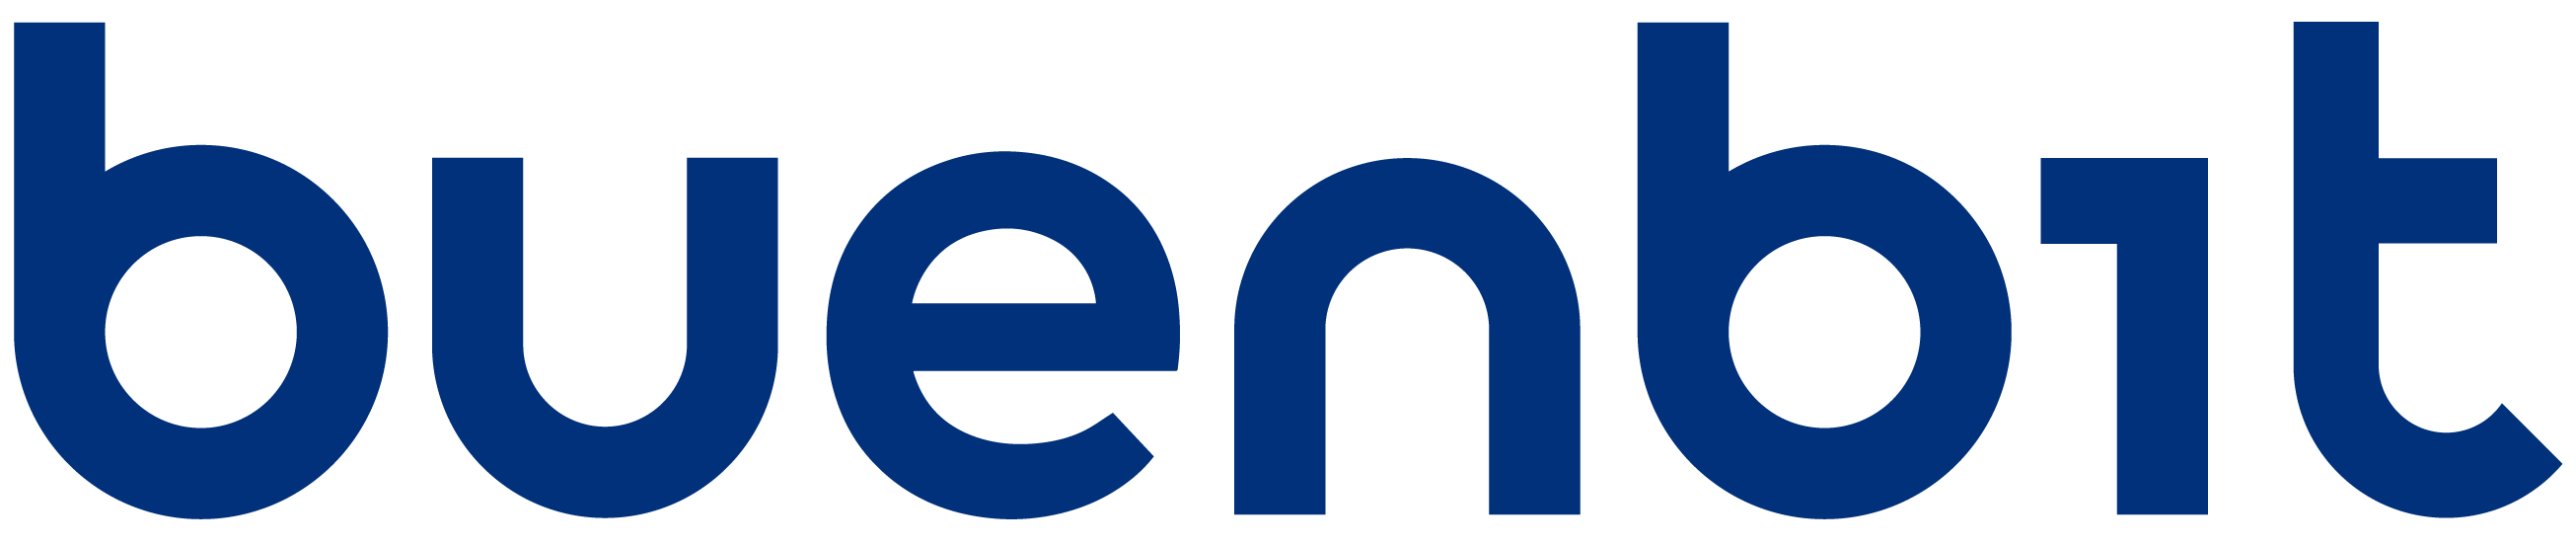 Logo buenbit azul wordpress